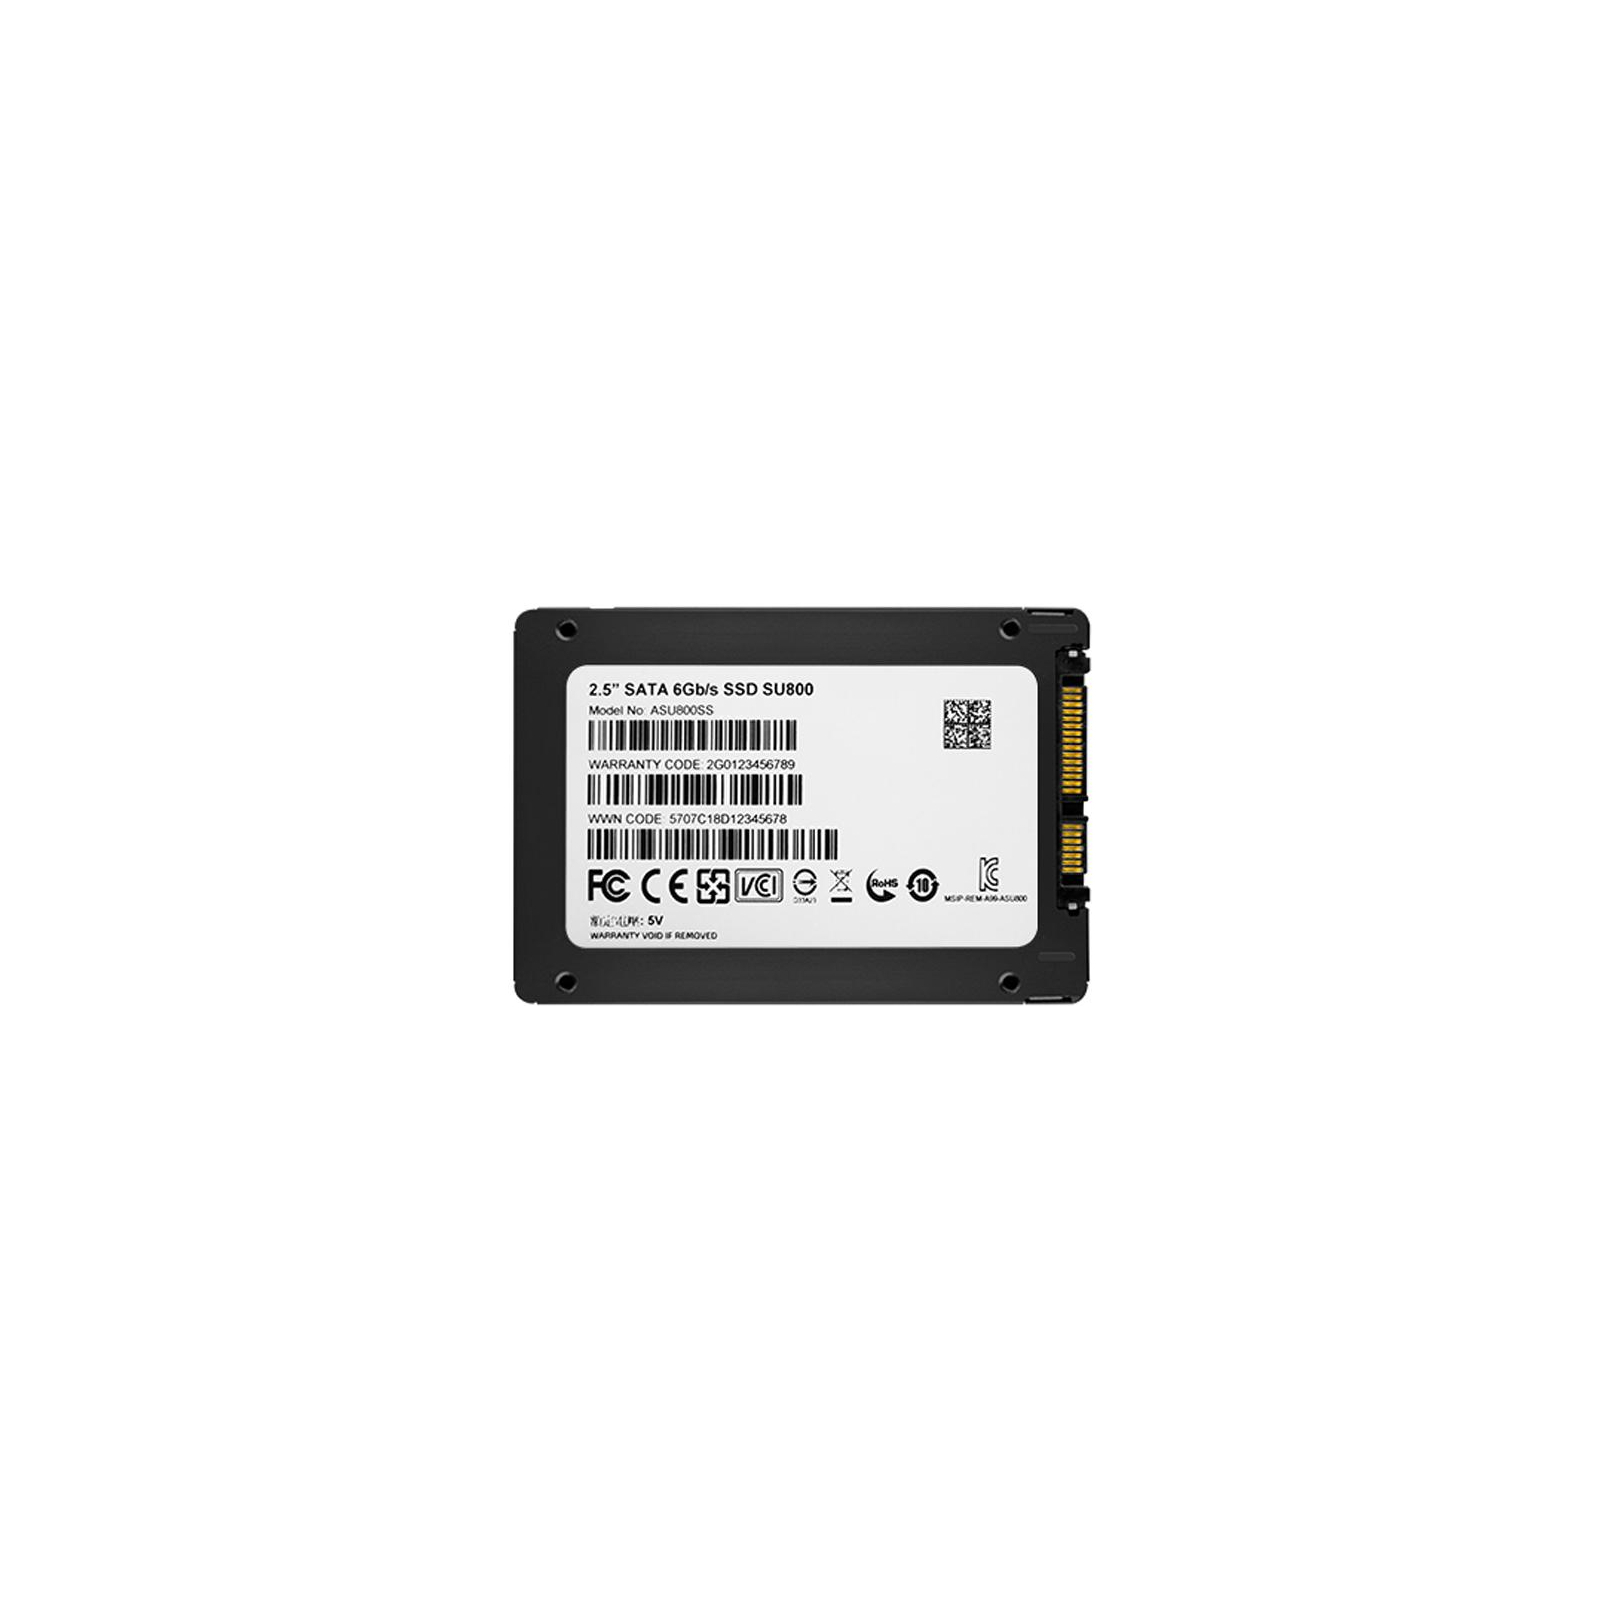 Накопичувач SSD 2.5" 128GB ADATA (ASU800SS-128GT-C) зображення 5